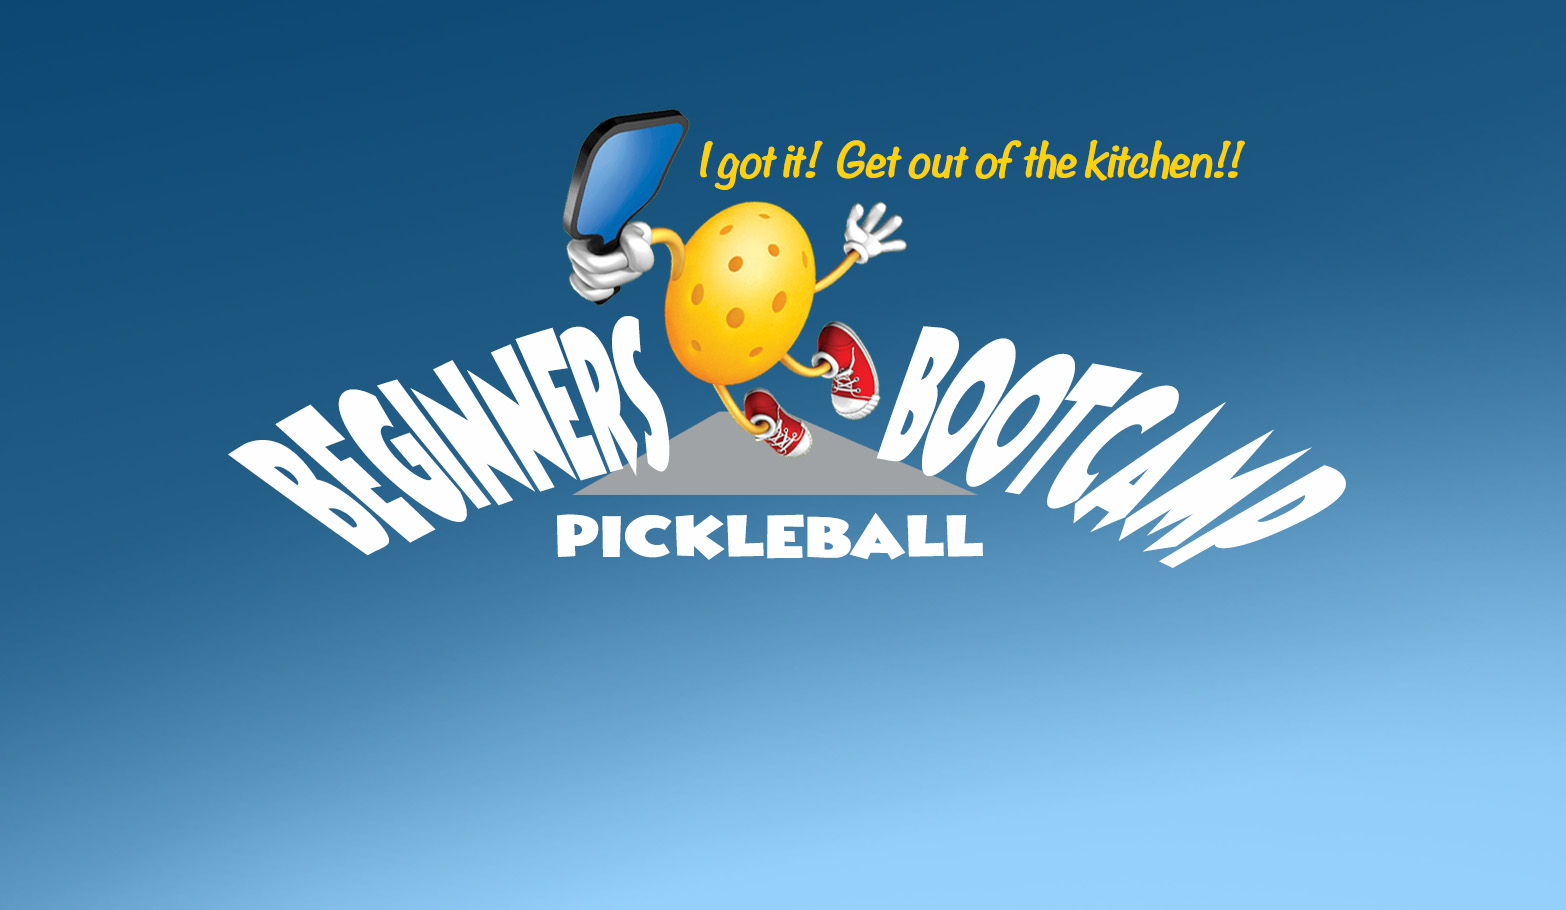 Learn PickleBall